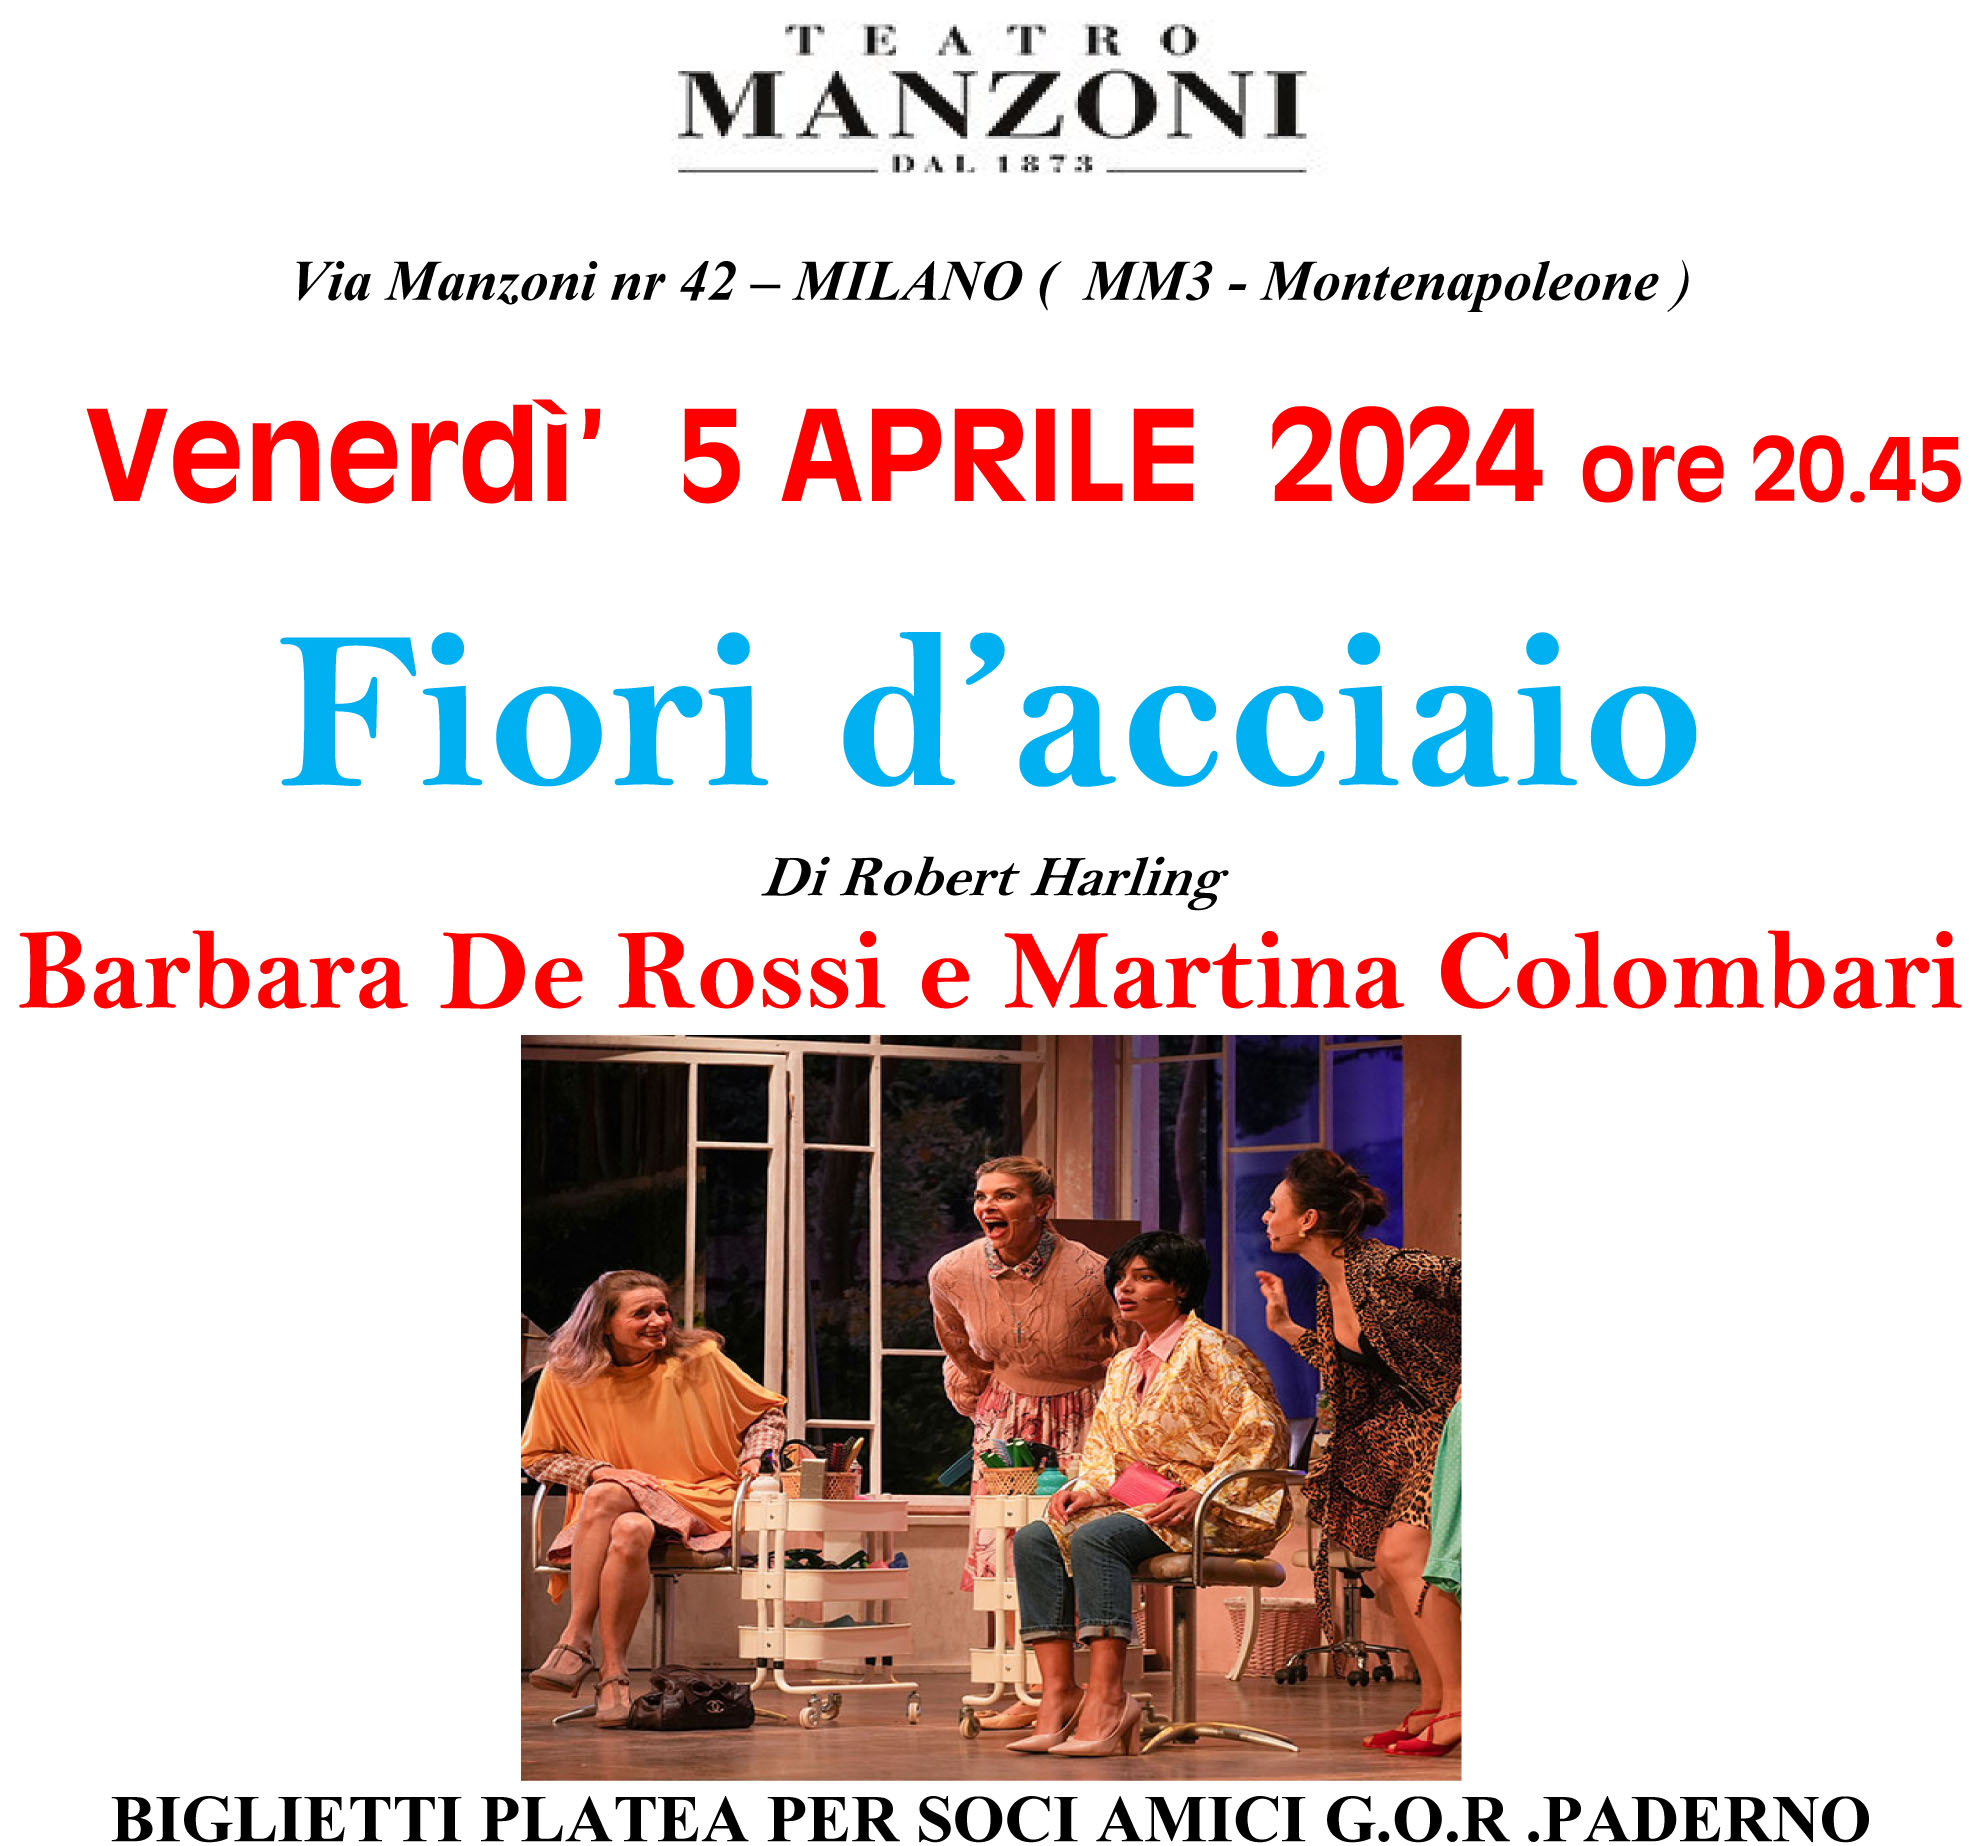 Microsoft Word - FIORI D'ACCIAIO - TEATRO MANZONI 05 APRILE 202